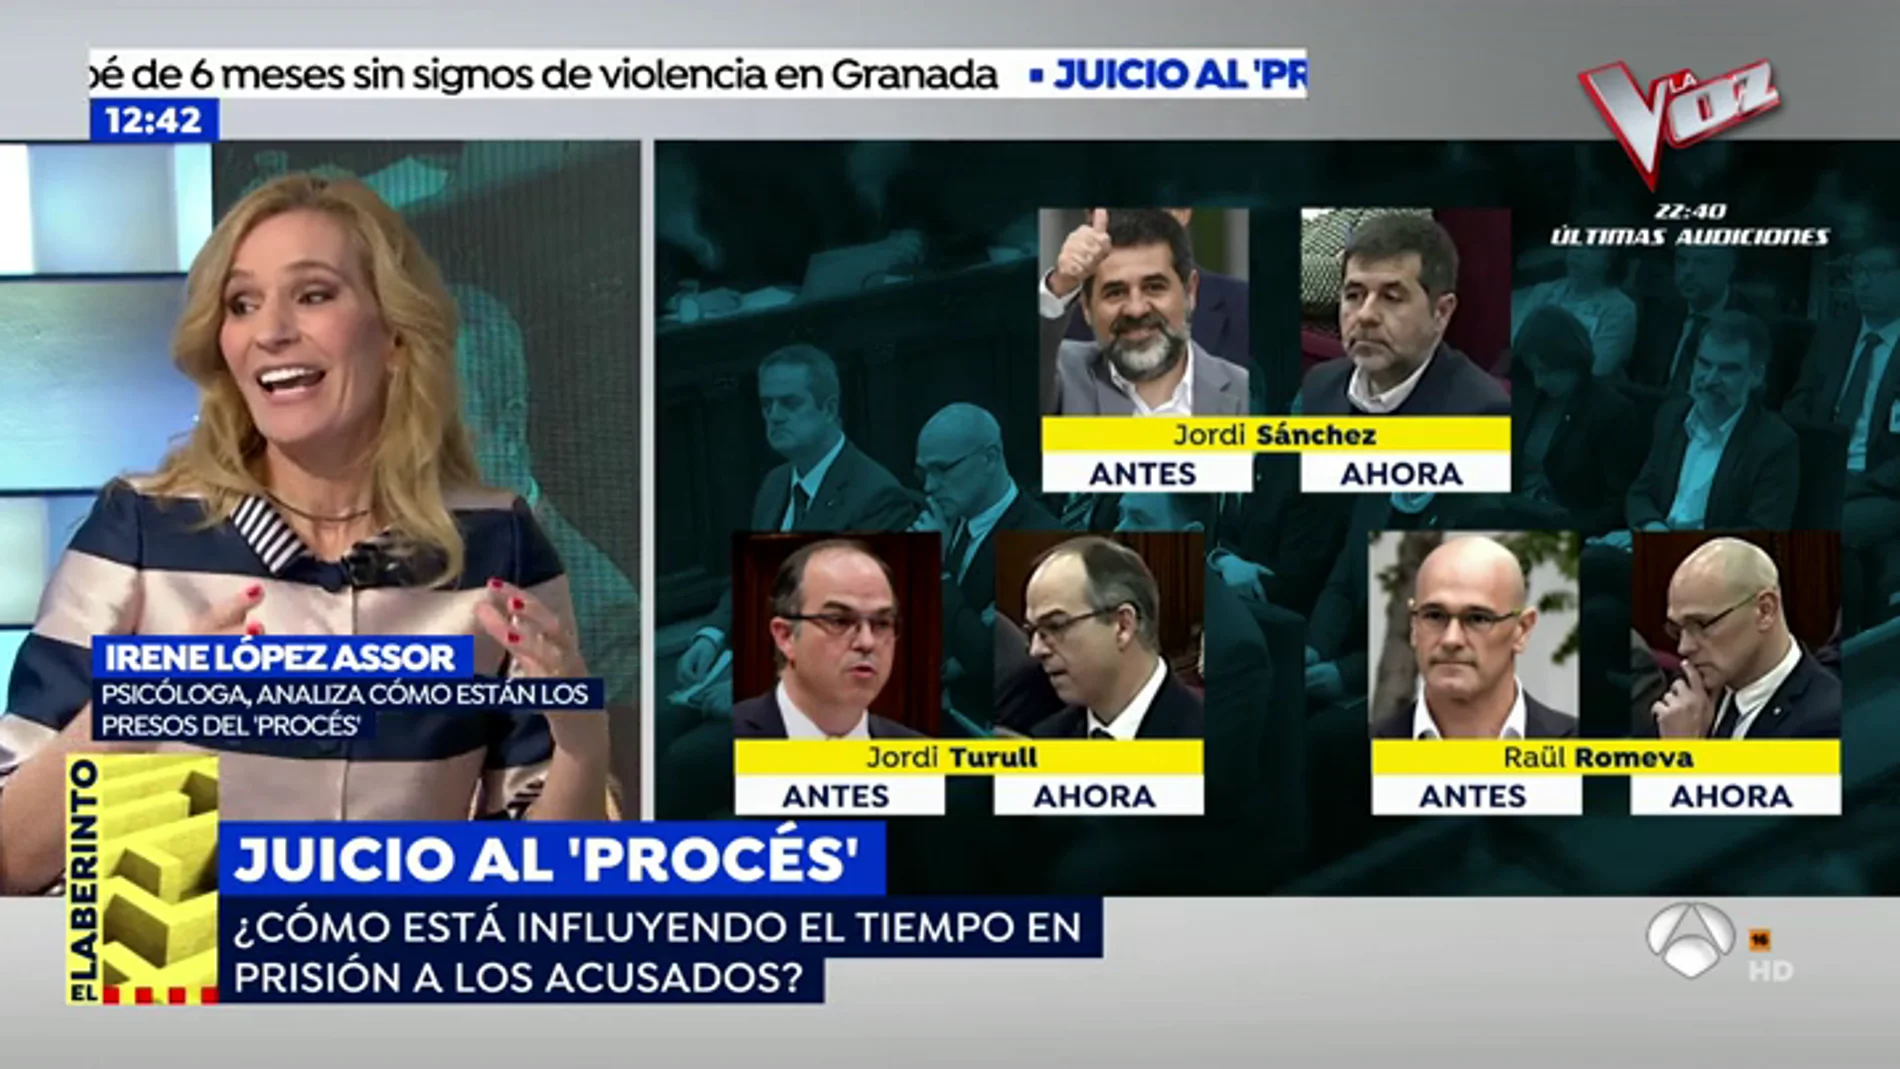 El estado de ánimo de los acusados: "El que mejor lo lleva es Romeva y el más abatido es Jordi Sánchez" 